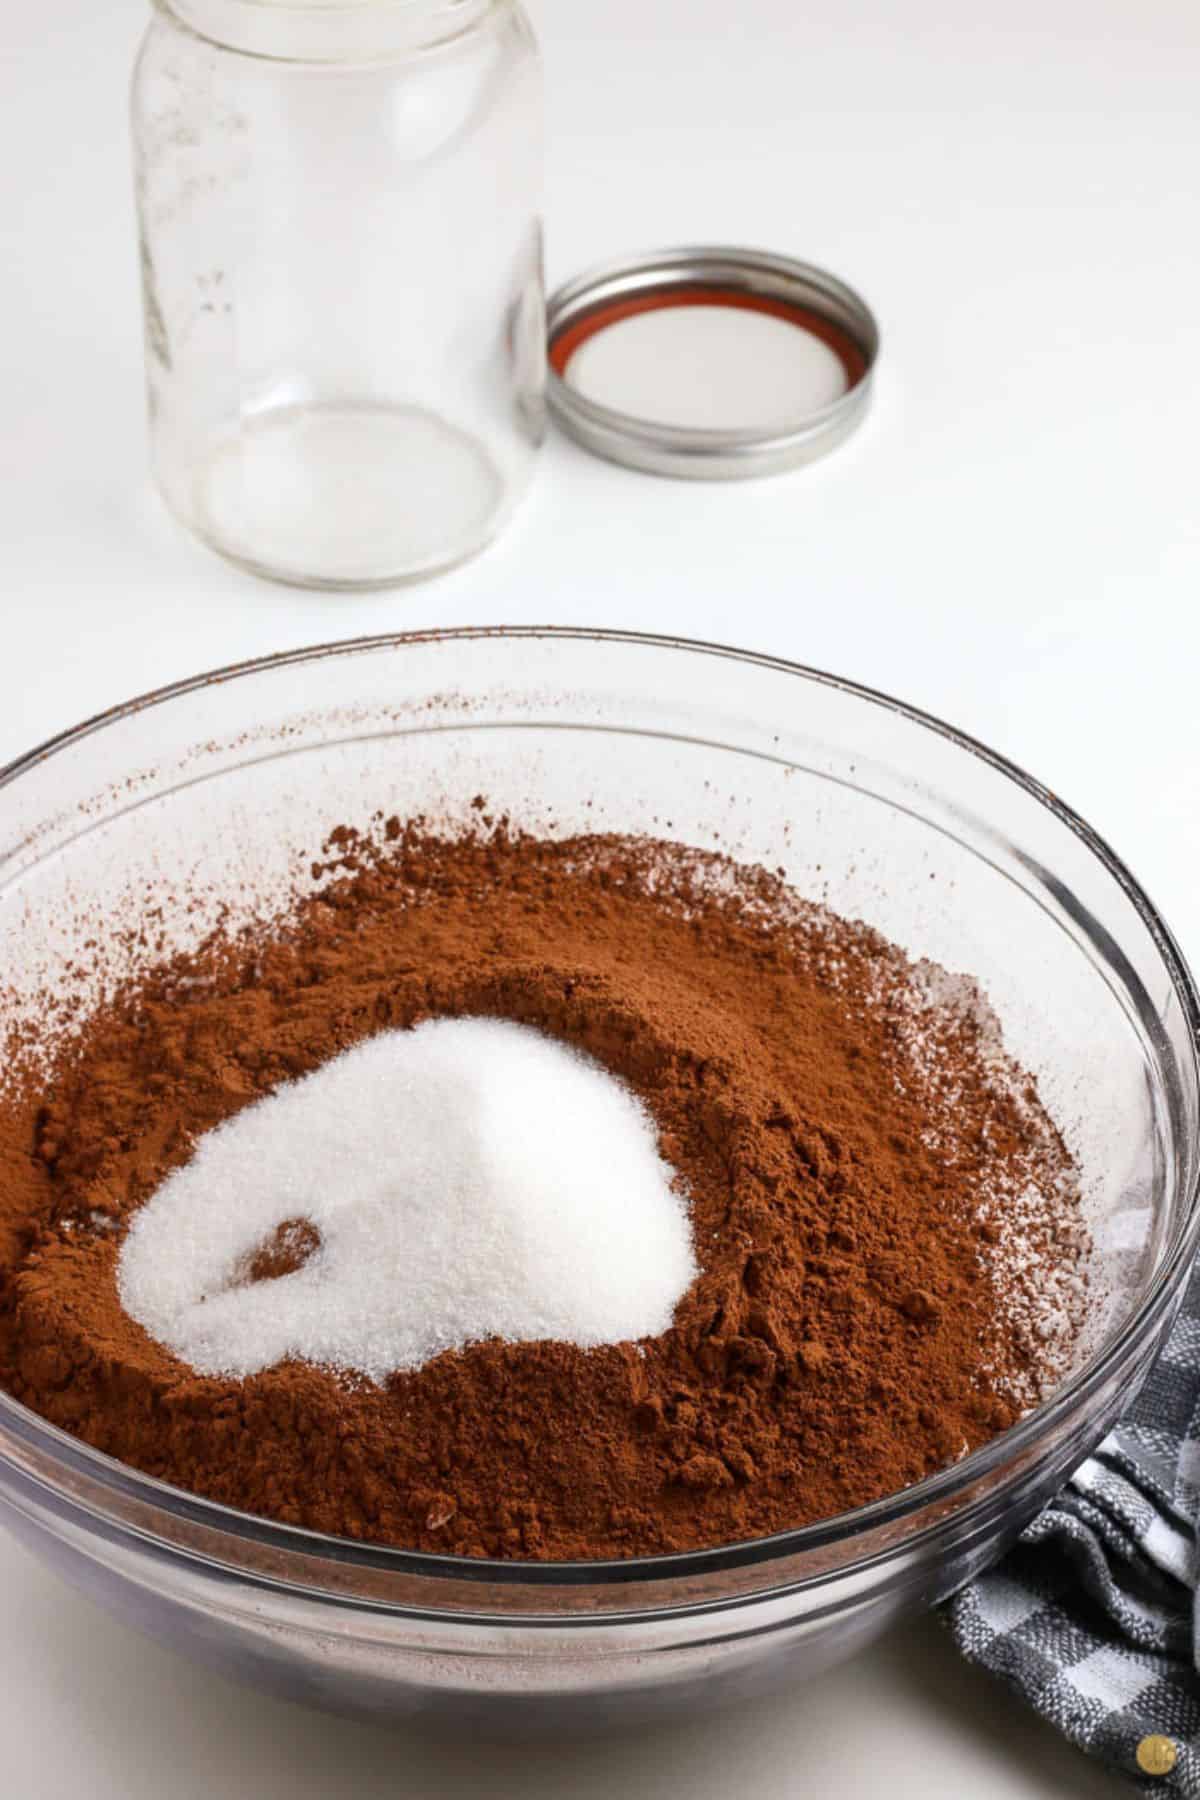 mix cocoa powder and sugar